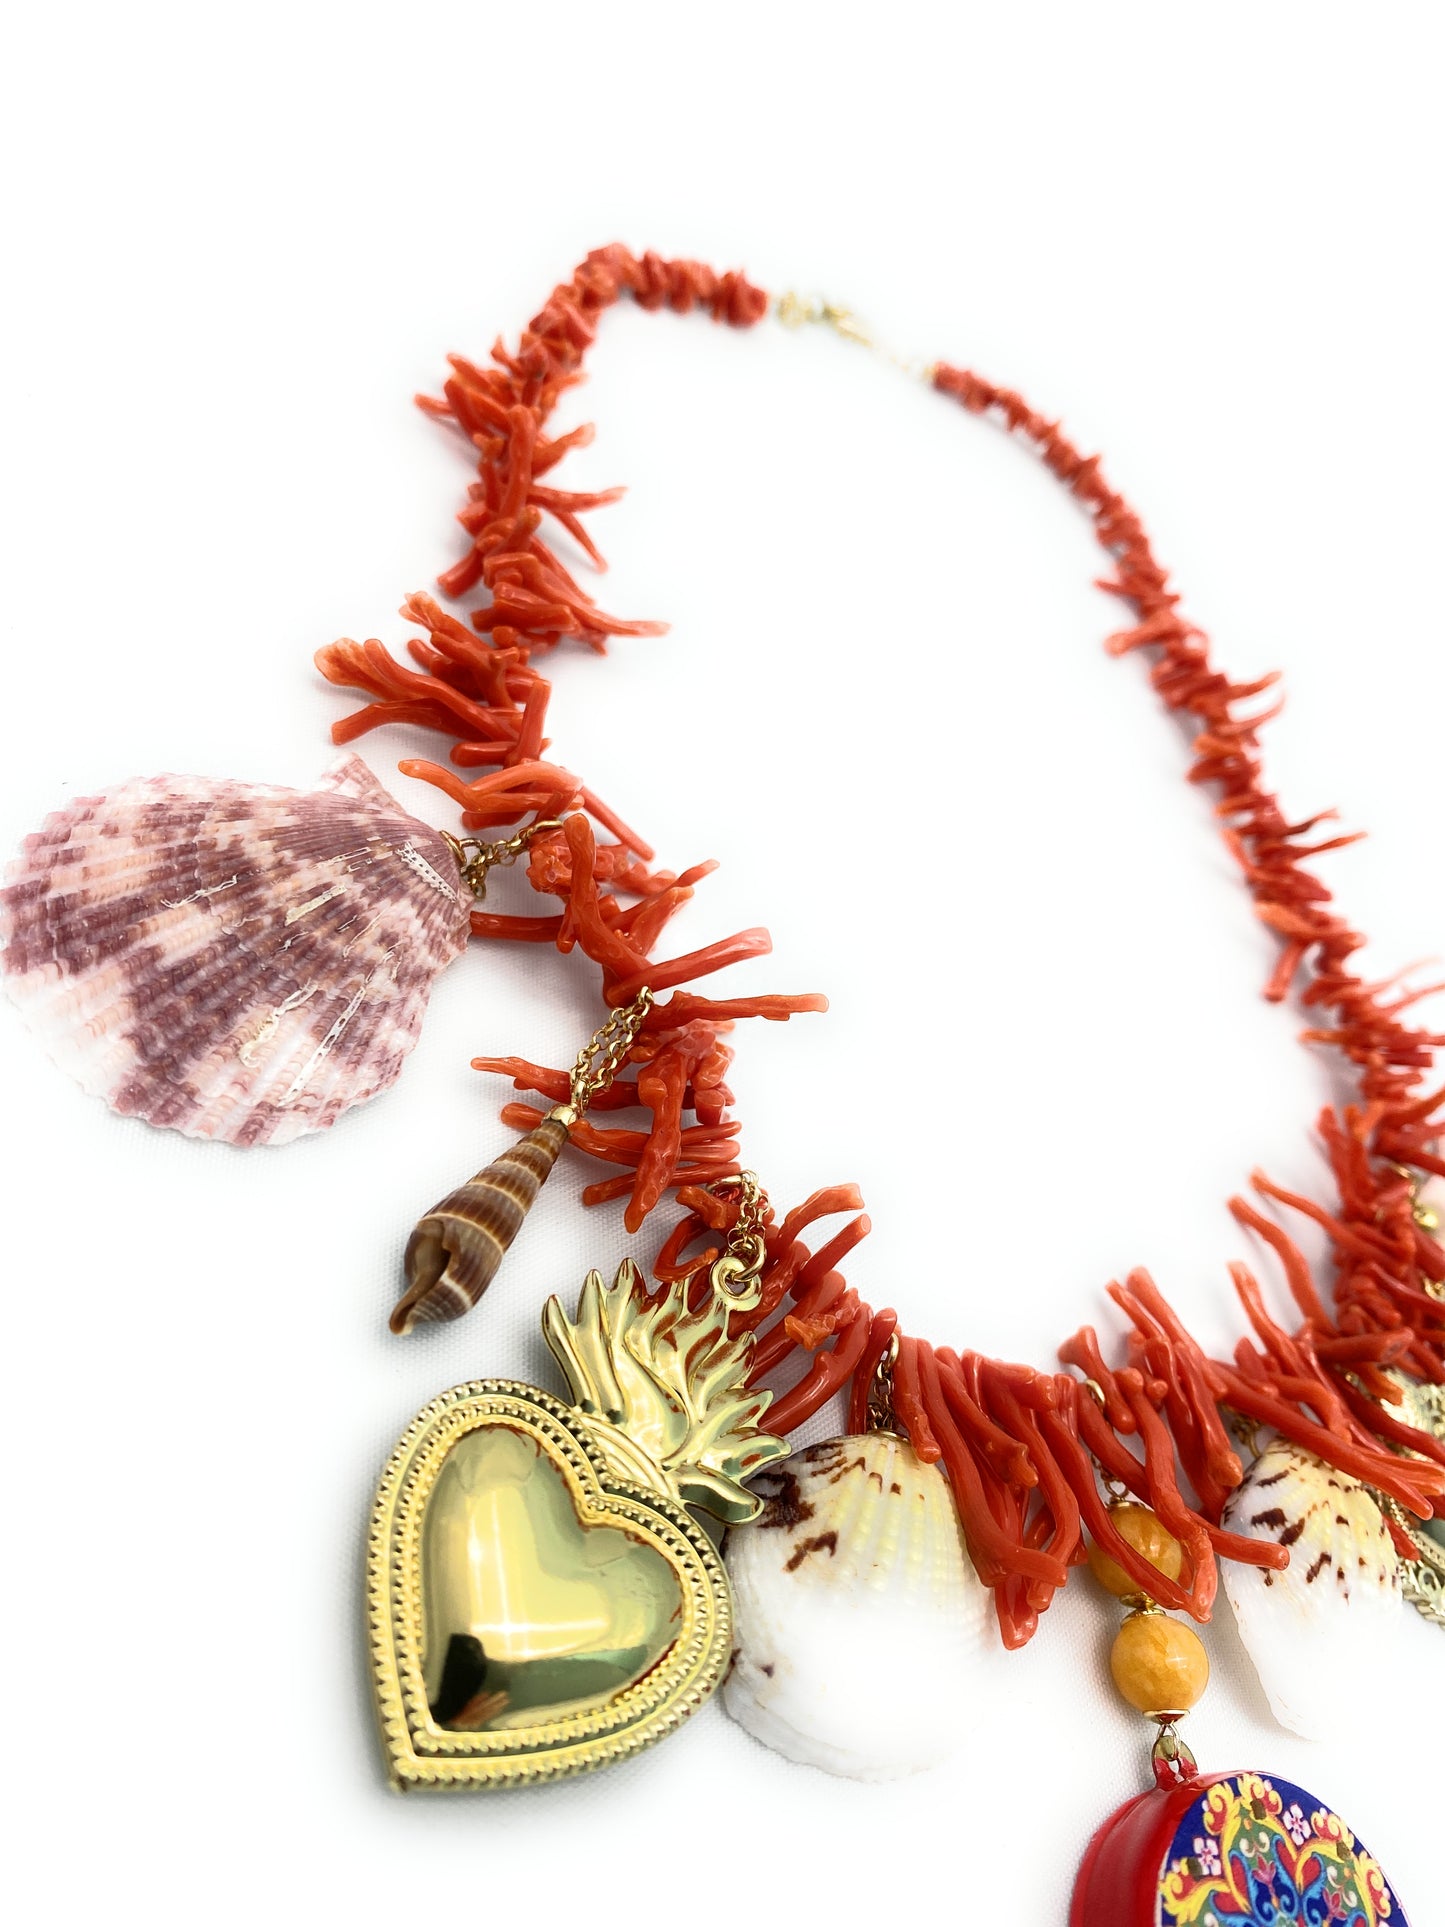 Collana charms con frange corallo rosso, conchiglie, giada gialla e tamburello con smalto rosso